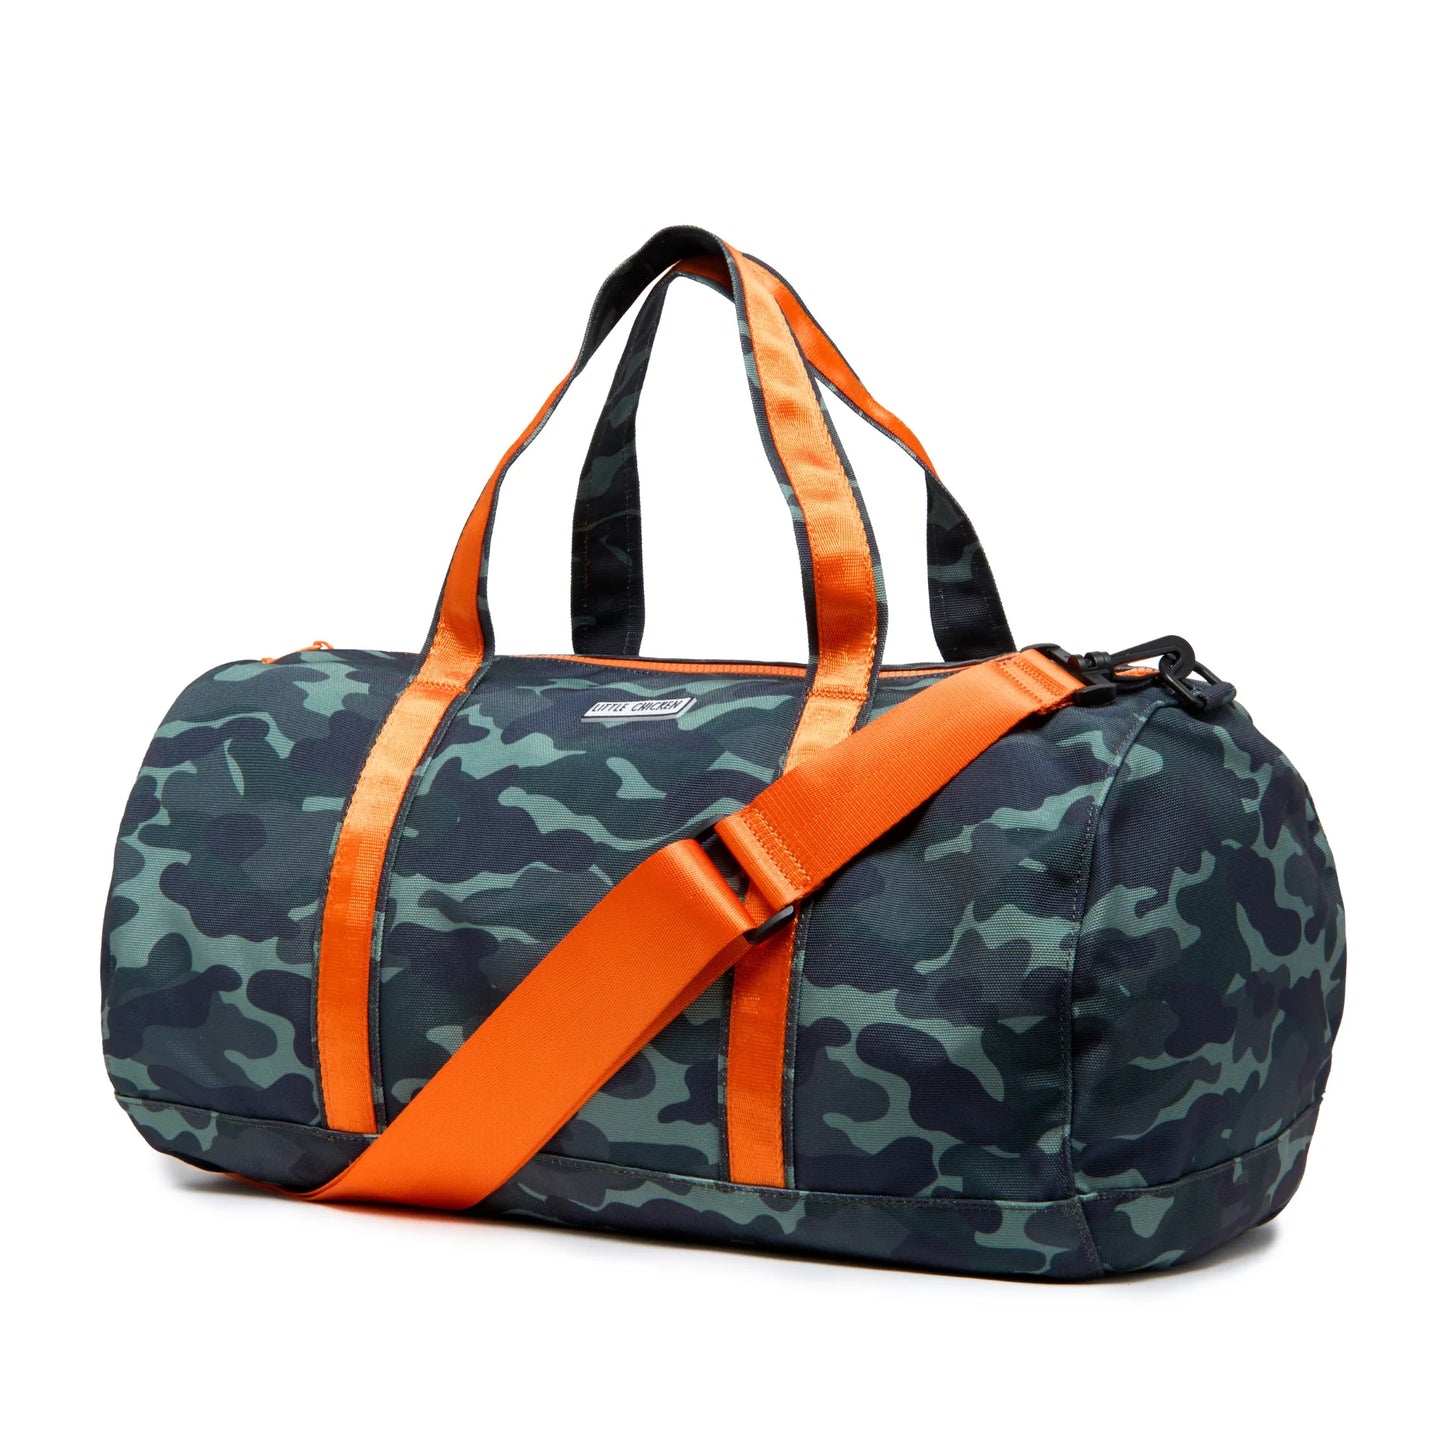 Camo Duffle Bag